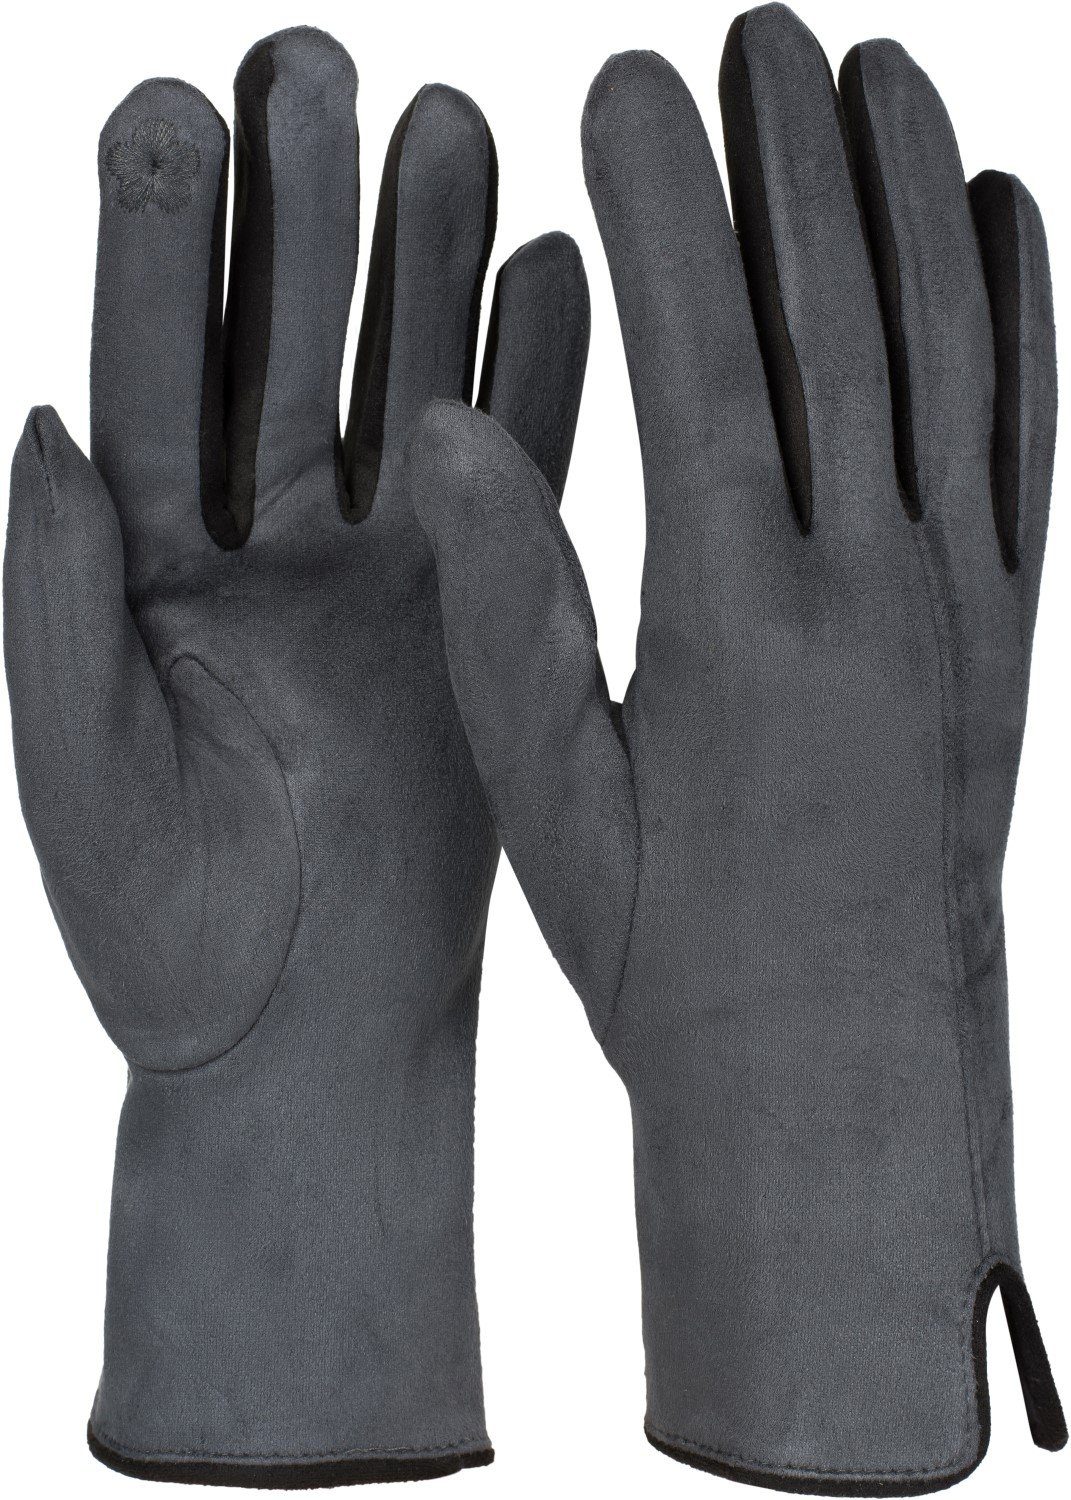 styleBREAKER Fleecehandschuhe Touchscreen Handschuhe Kontrast online kaufen  | OTTO